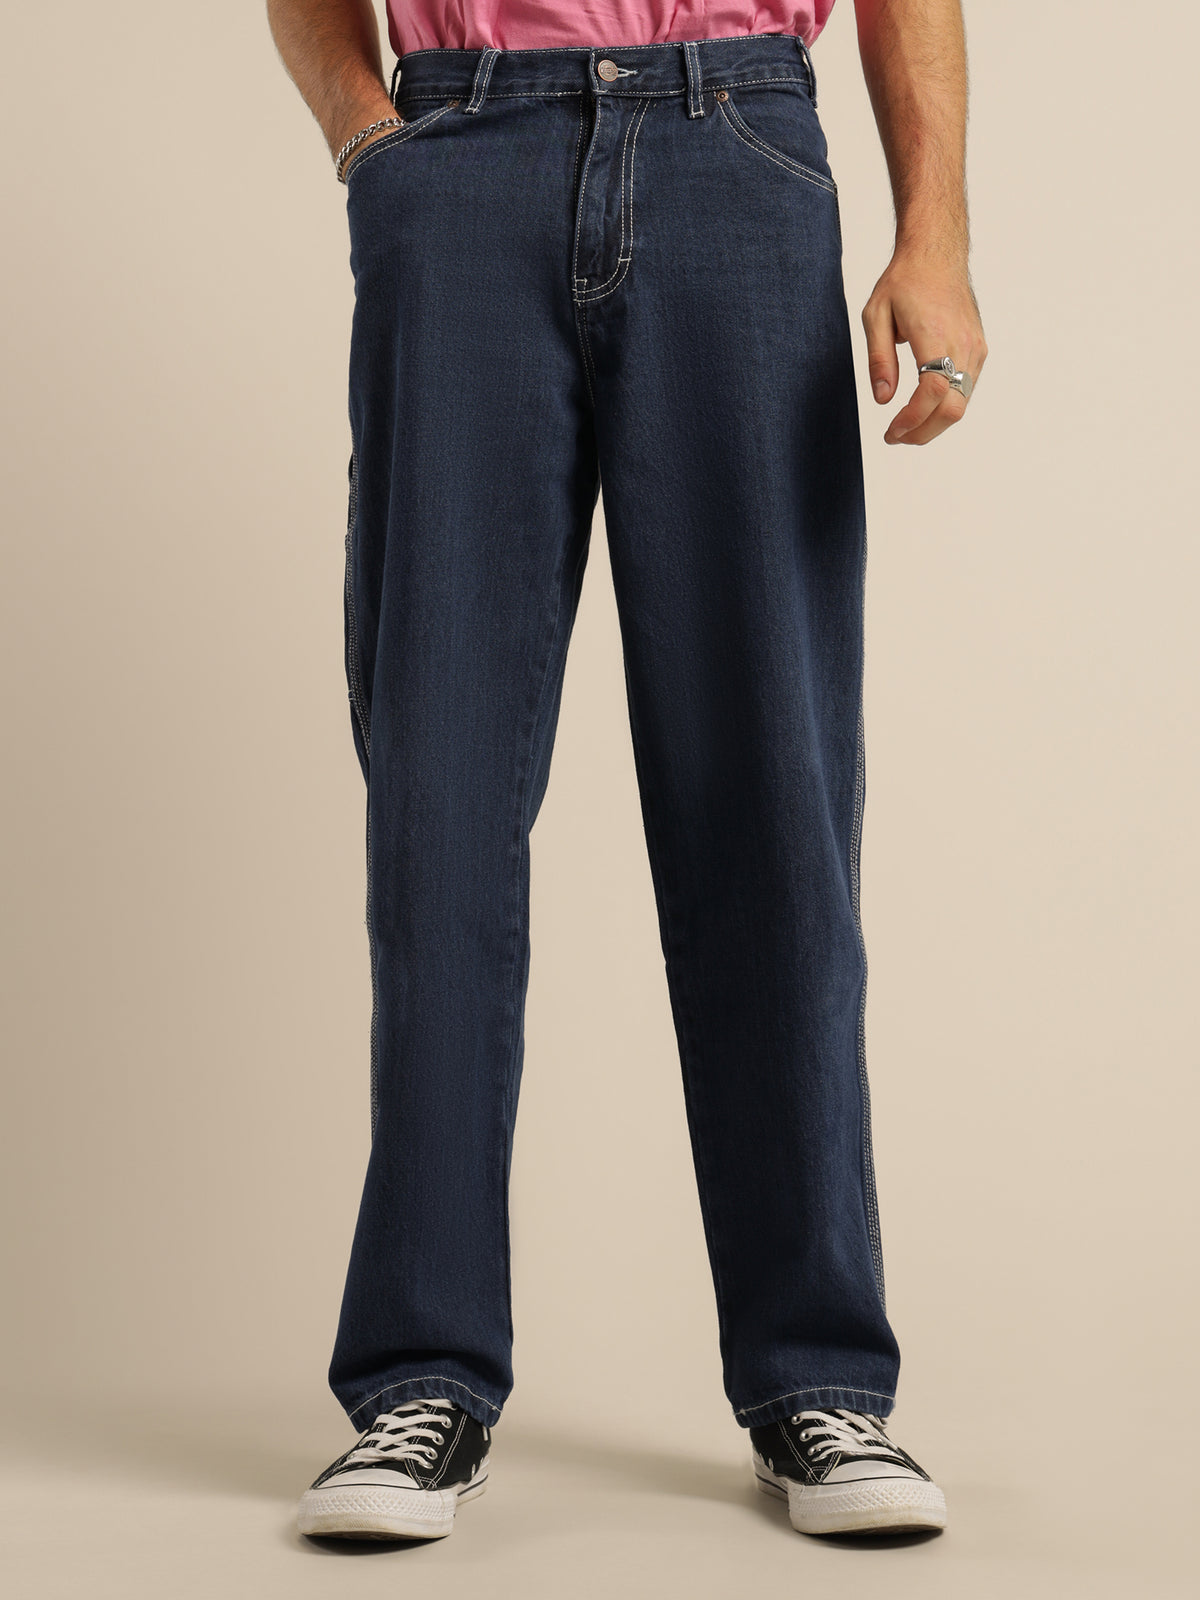 1994 Carpenter Denim Jeans in Rinsed Indigo